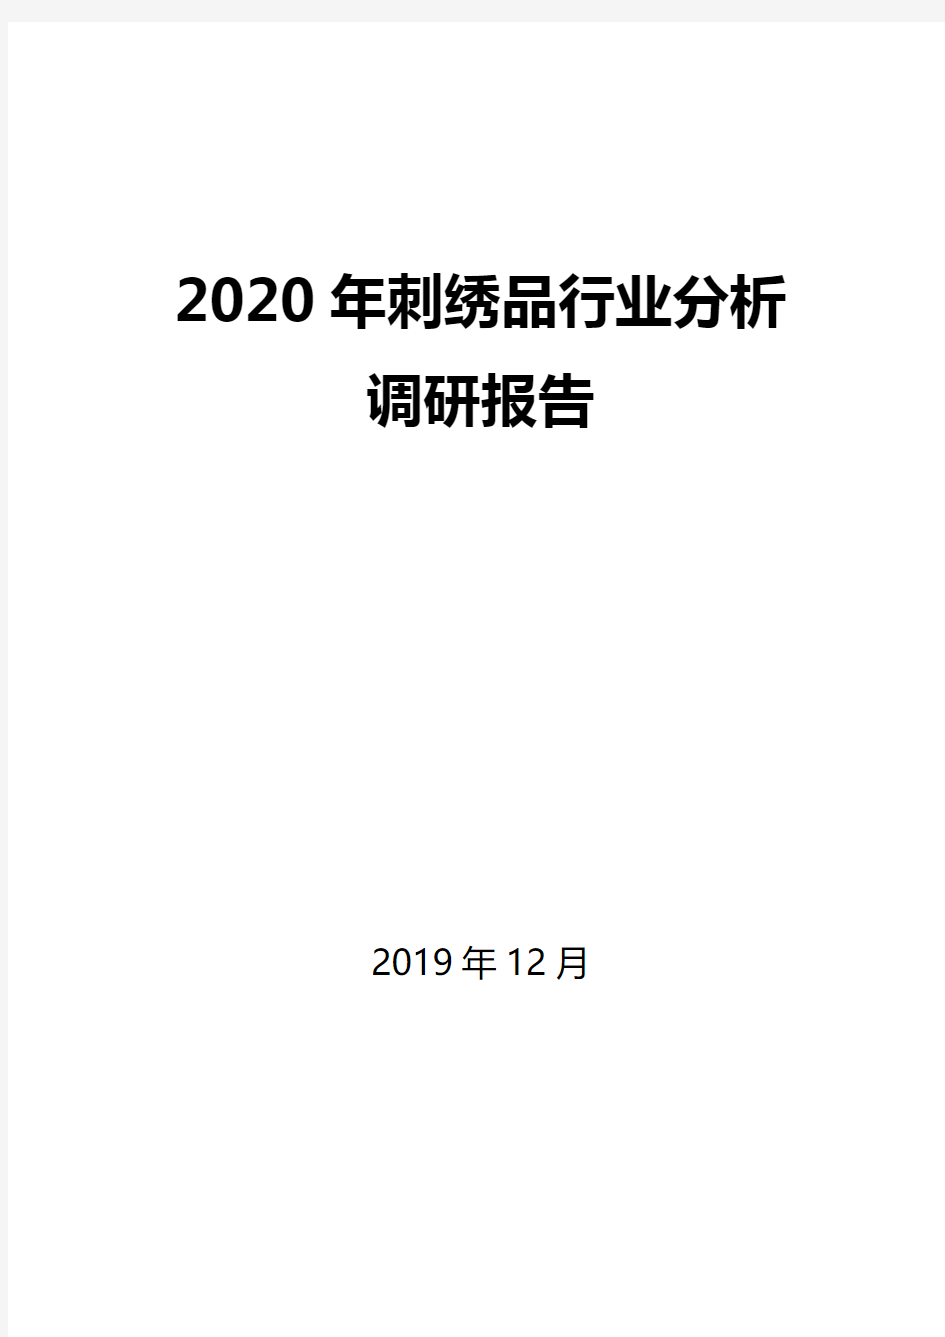 2020年刺绣品行业分析调研报告